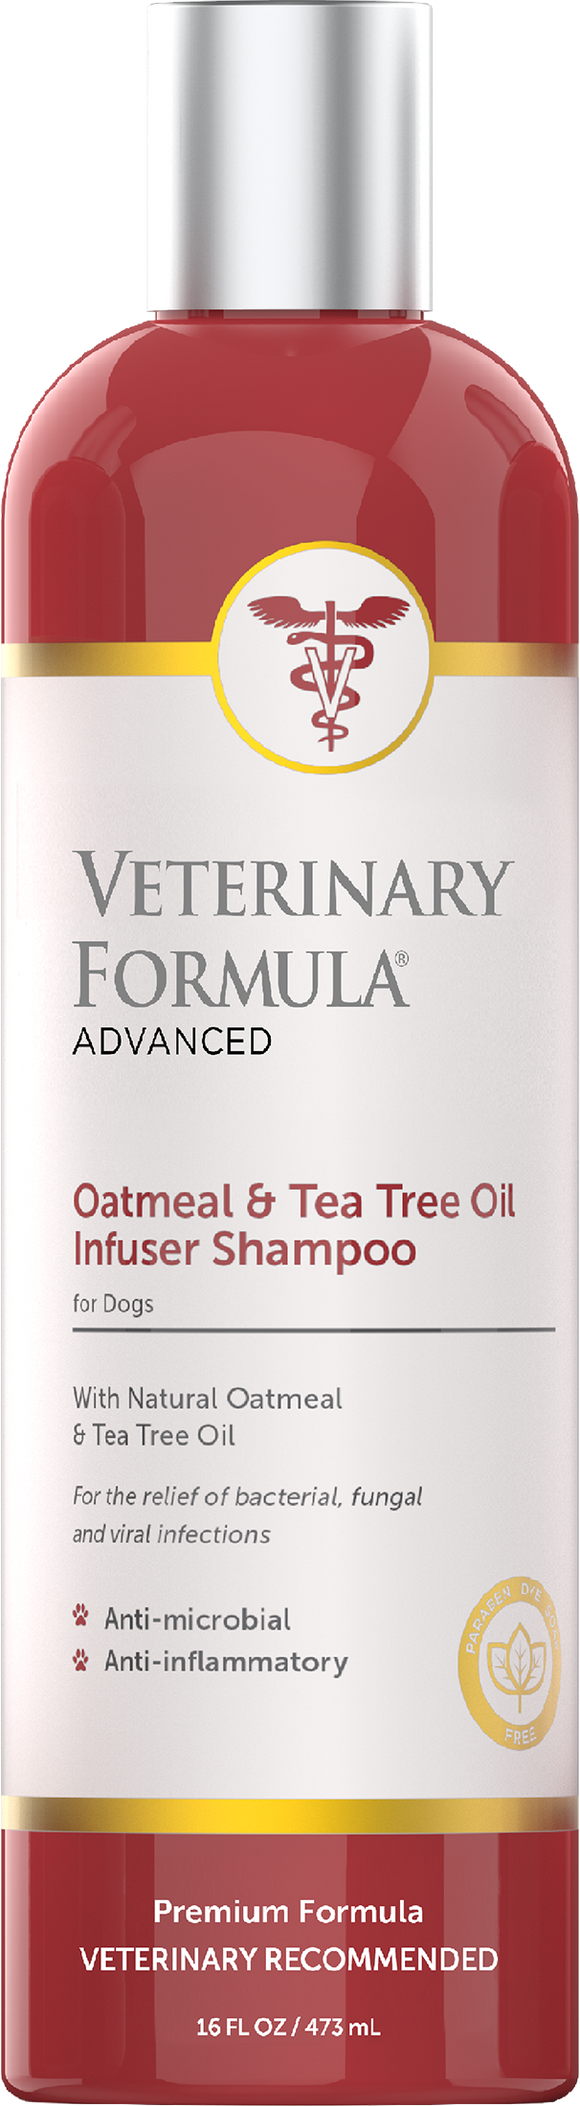 Synergy Labs Oatmeal & Tea Tree Oil Infuser Shampoo (16 oz)